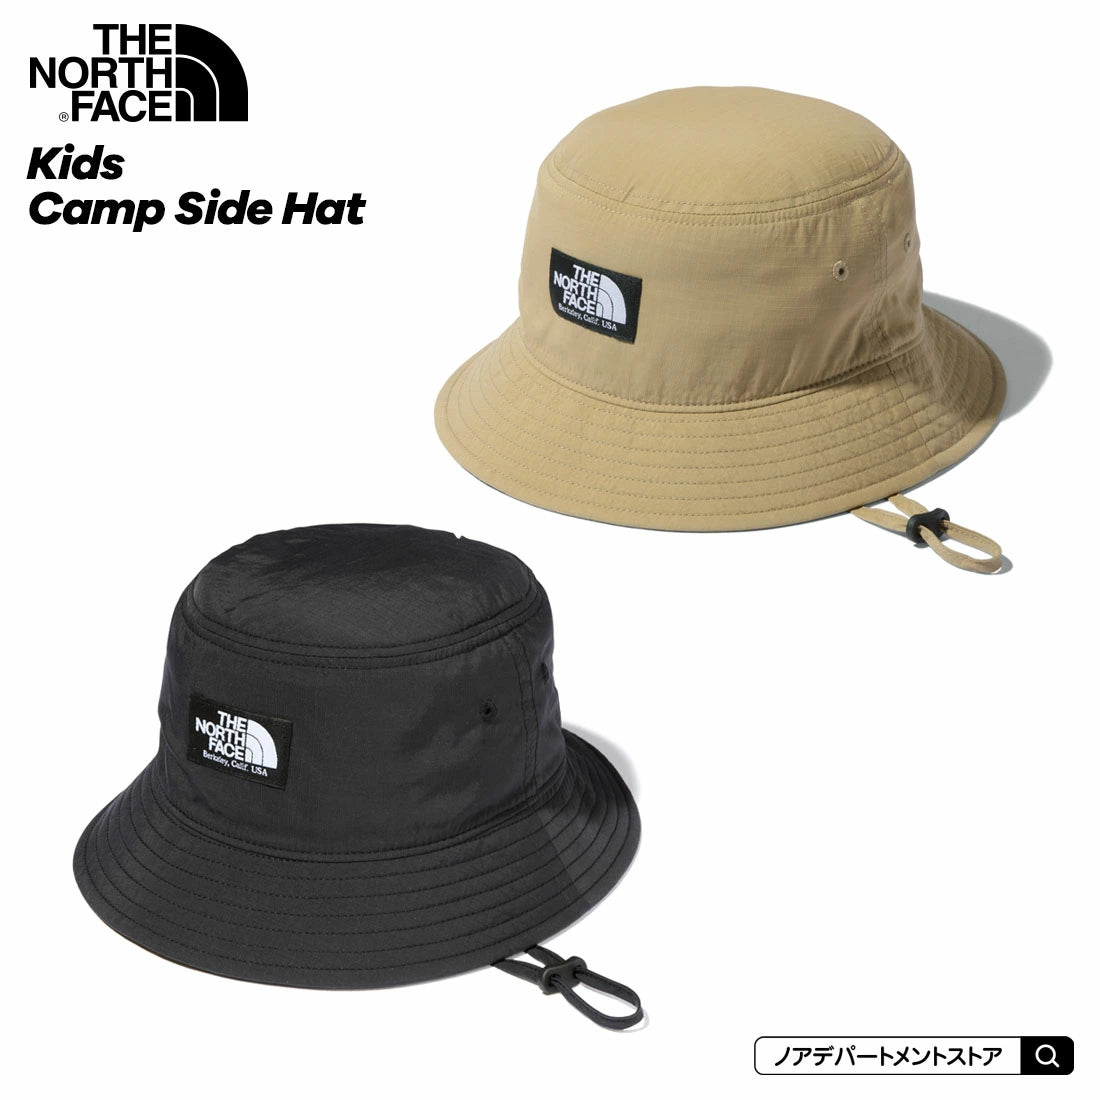 日版 The North face - 2022 超透氣撥水防UV帽 Kid's CAMP SIDE HAT (兩色)